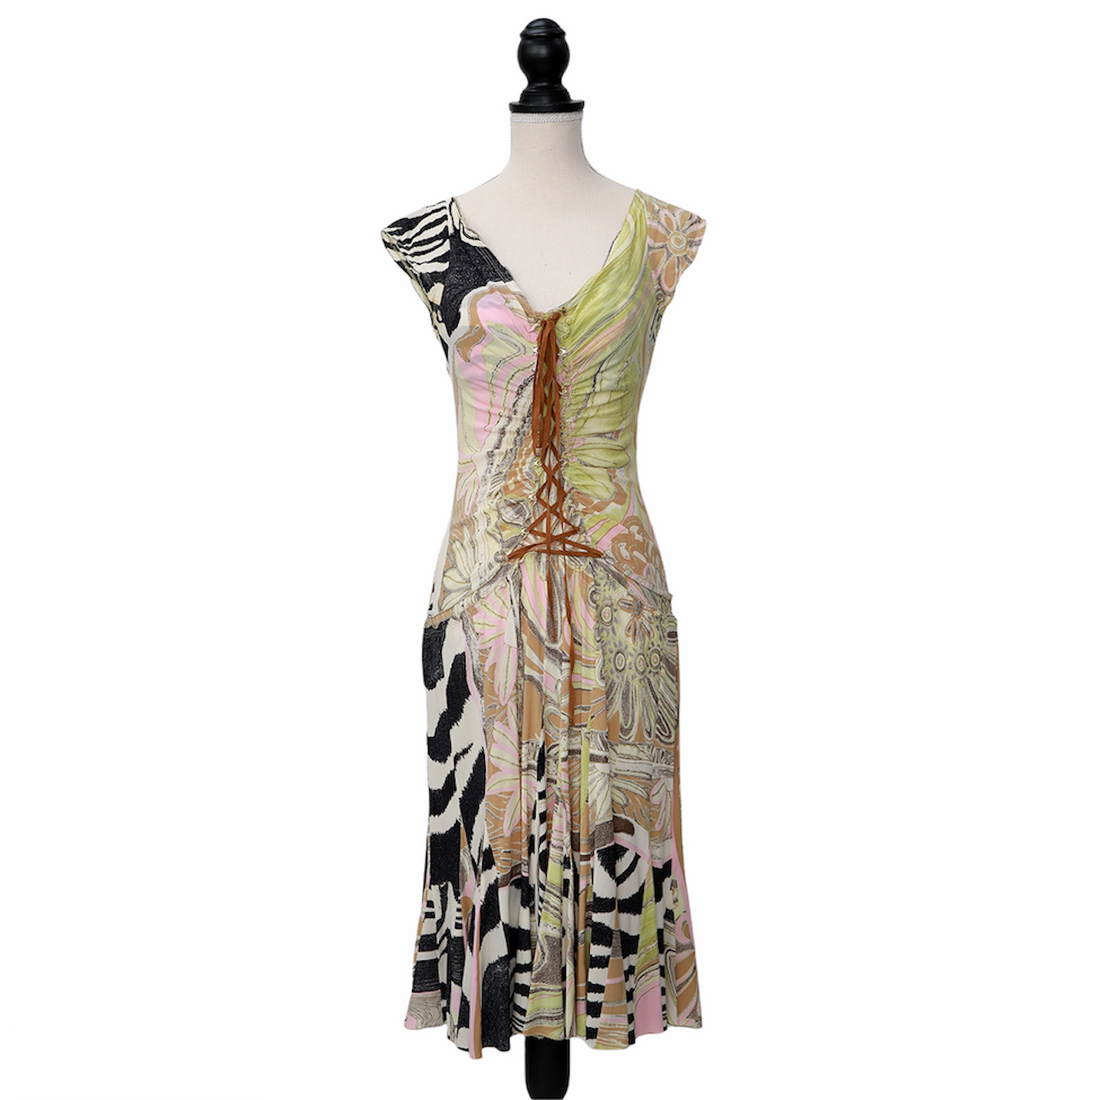 Roberto Cavalli Vintage Kleid mit plissiertem Rock im Carrie Bradshaw Look